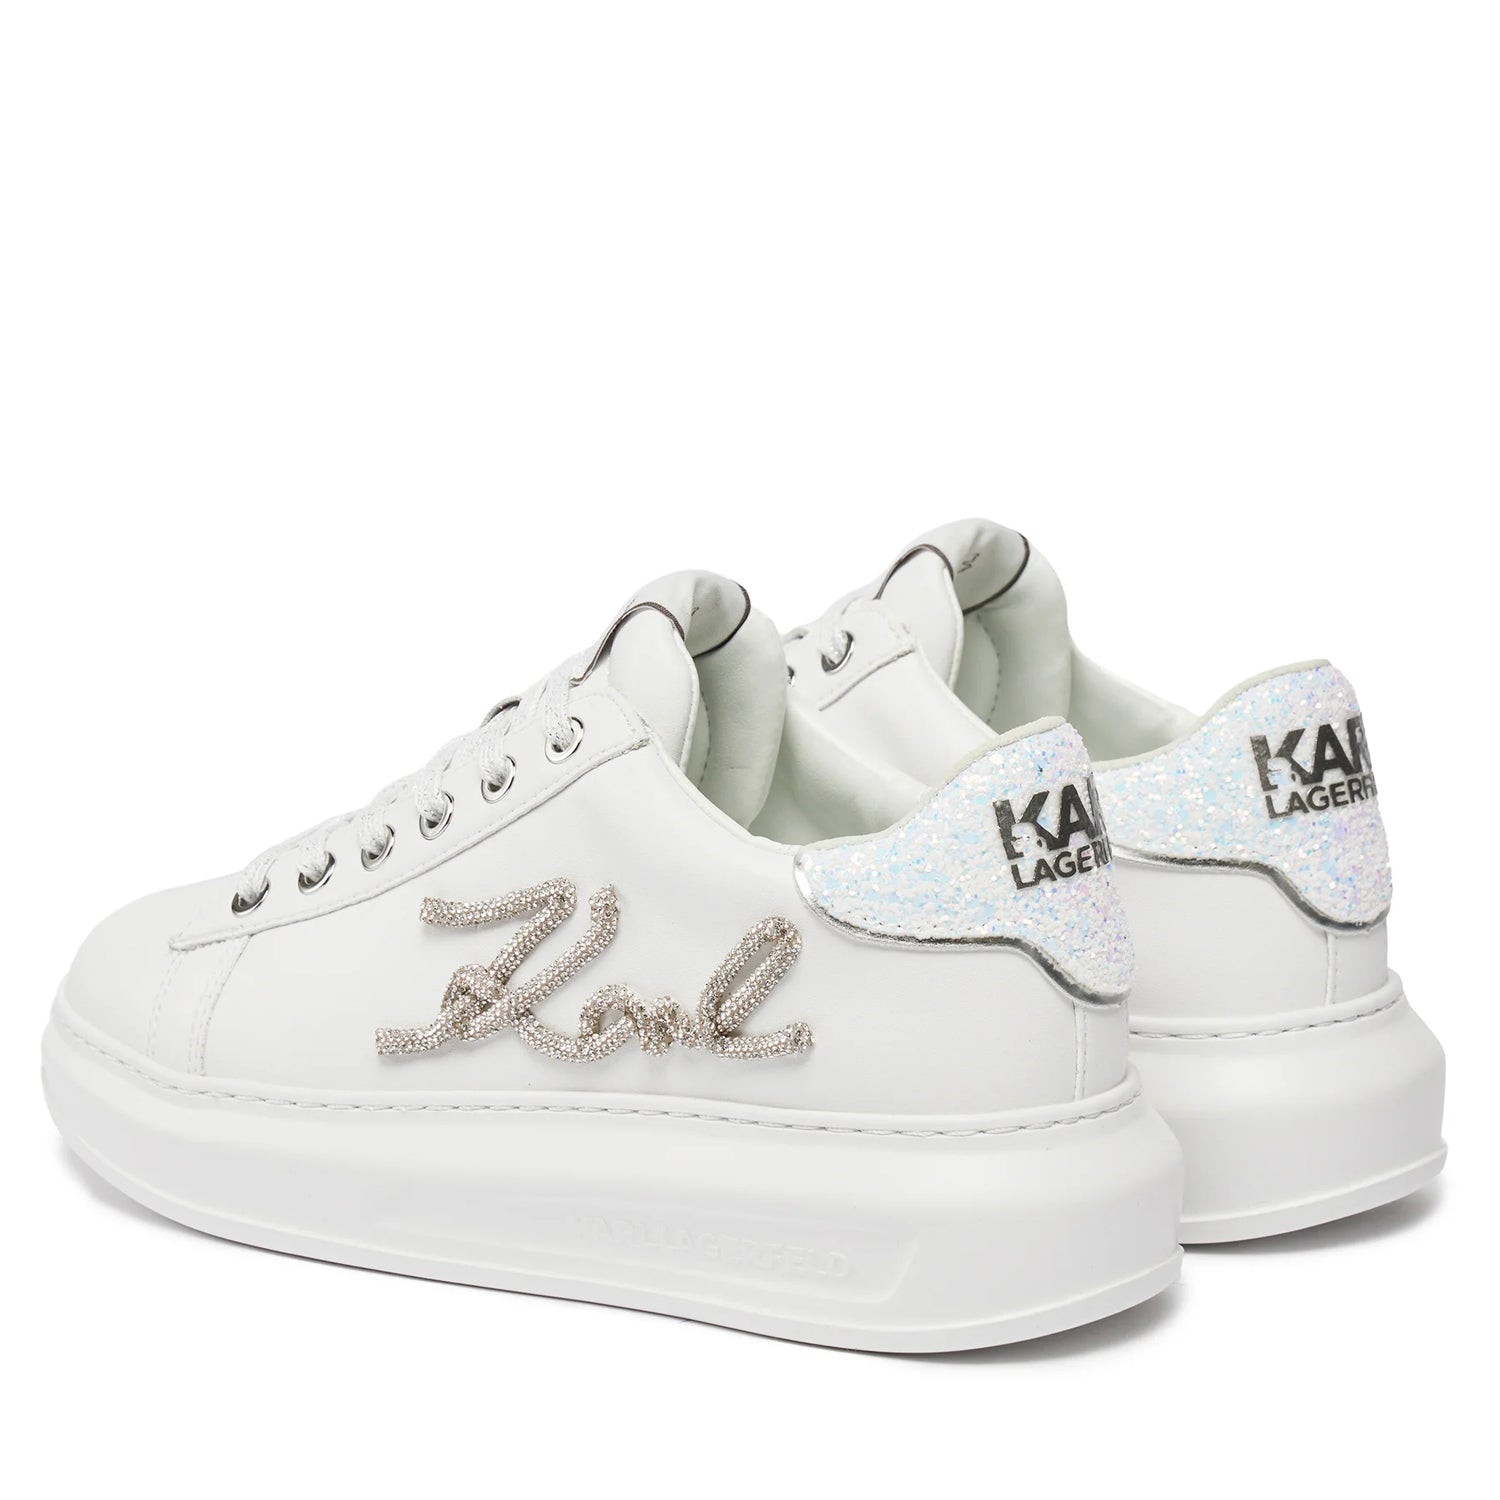 Karl Lagerfeld Sapatilhas Sneakers Shoes Kl62510g Whi Silver Branco Prateado_shot2